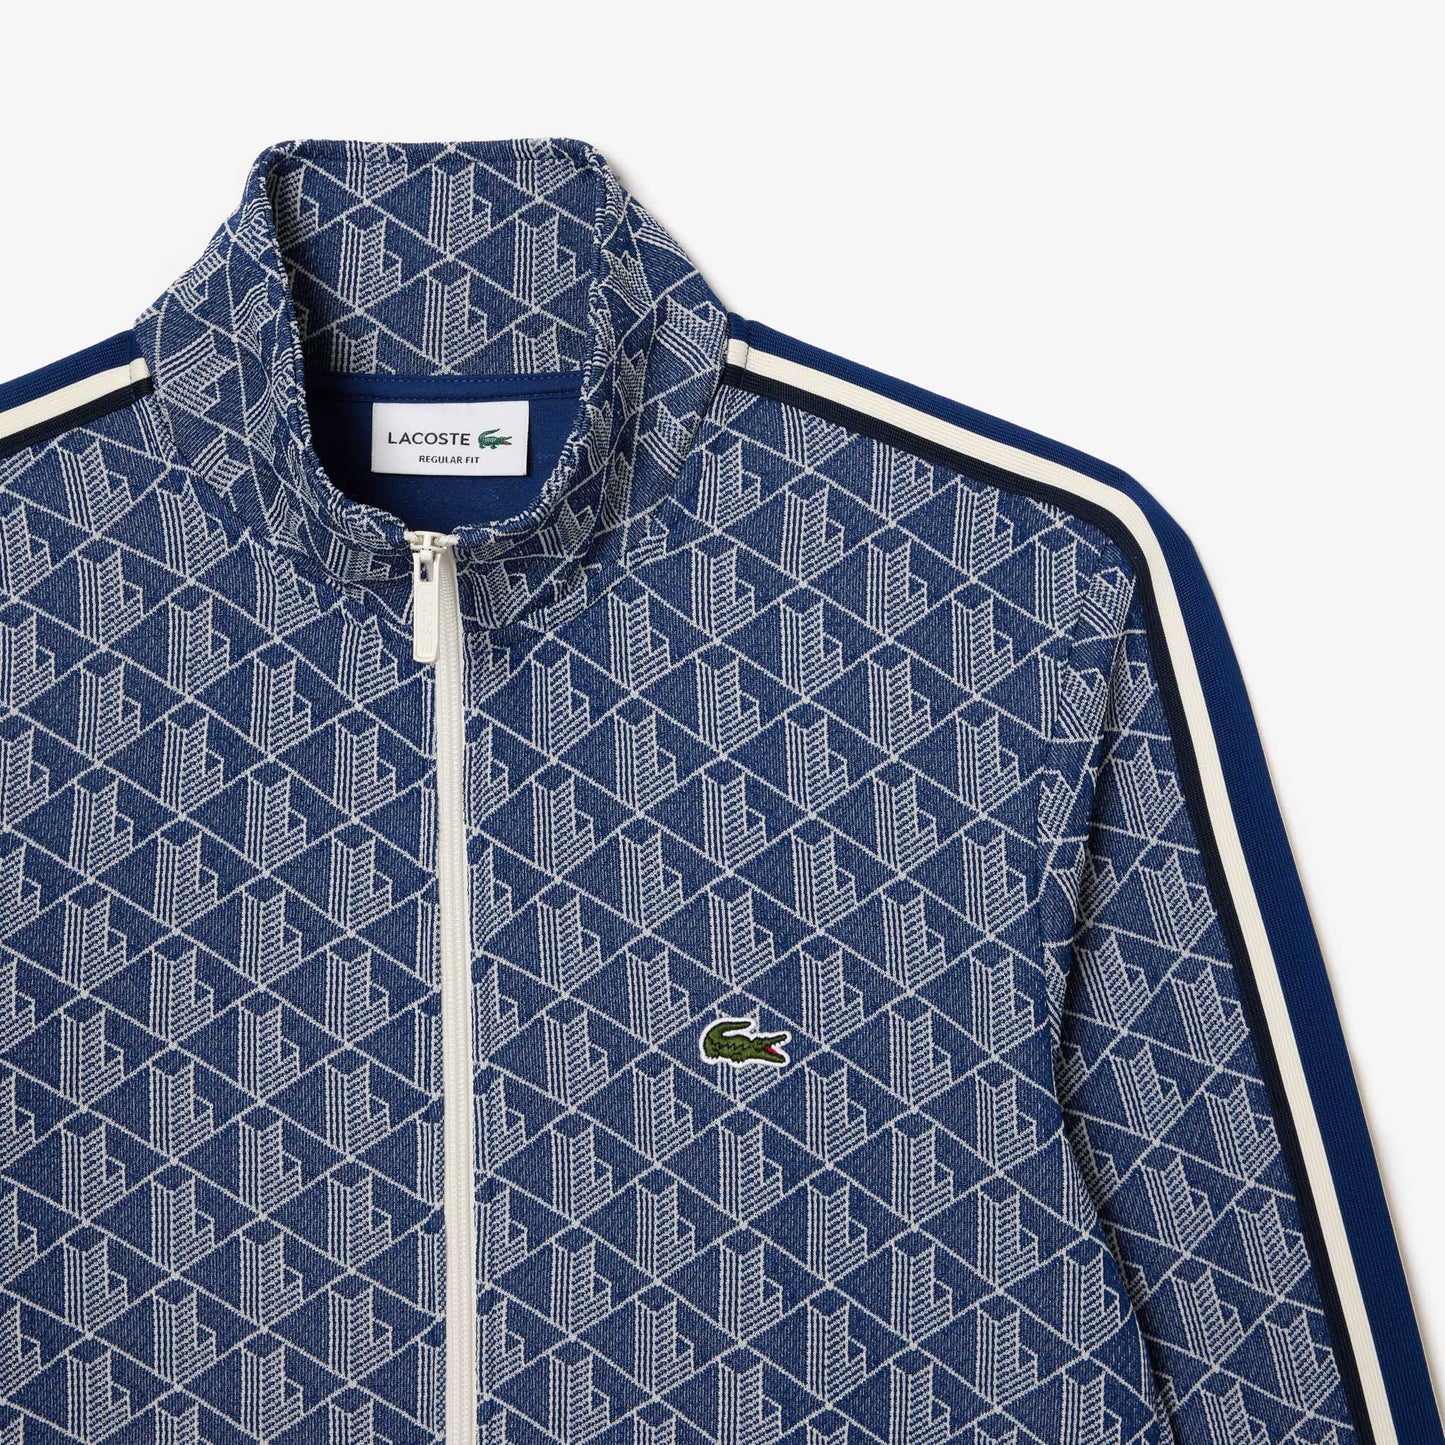 LACOSTE Men's Paris Monogram Zip-Up Sweatshirt